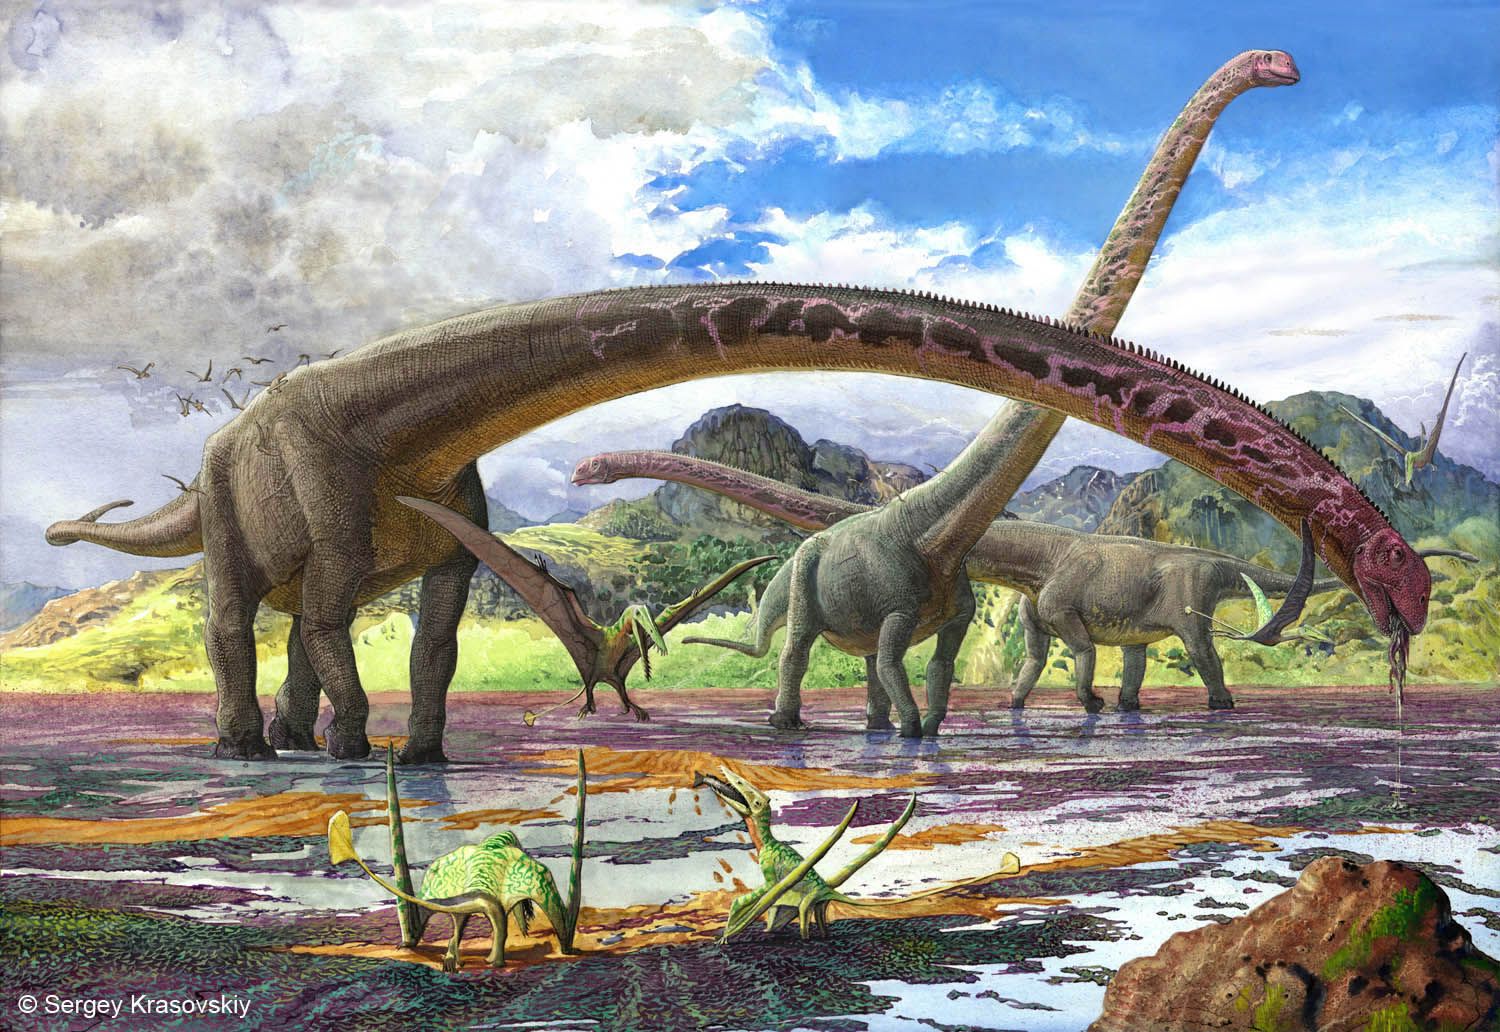 Mamenchisaurus by Sergey Krasovskiy